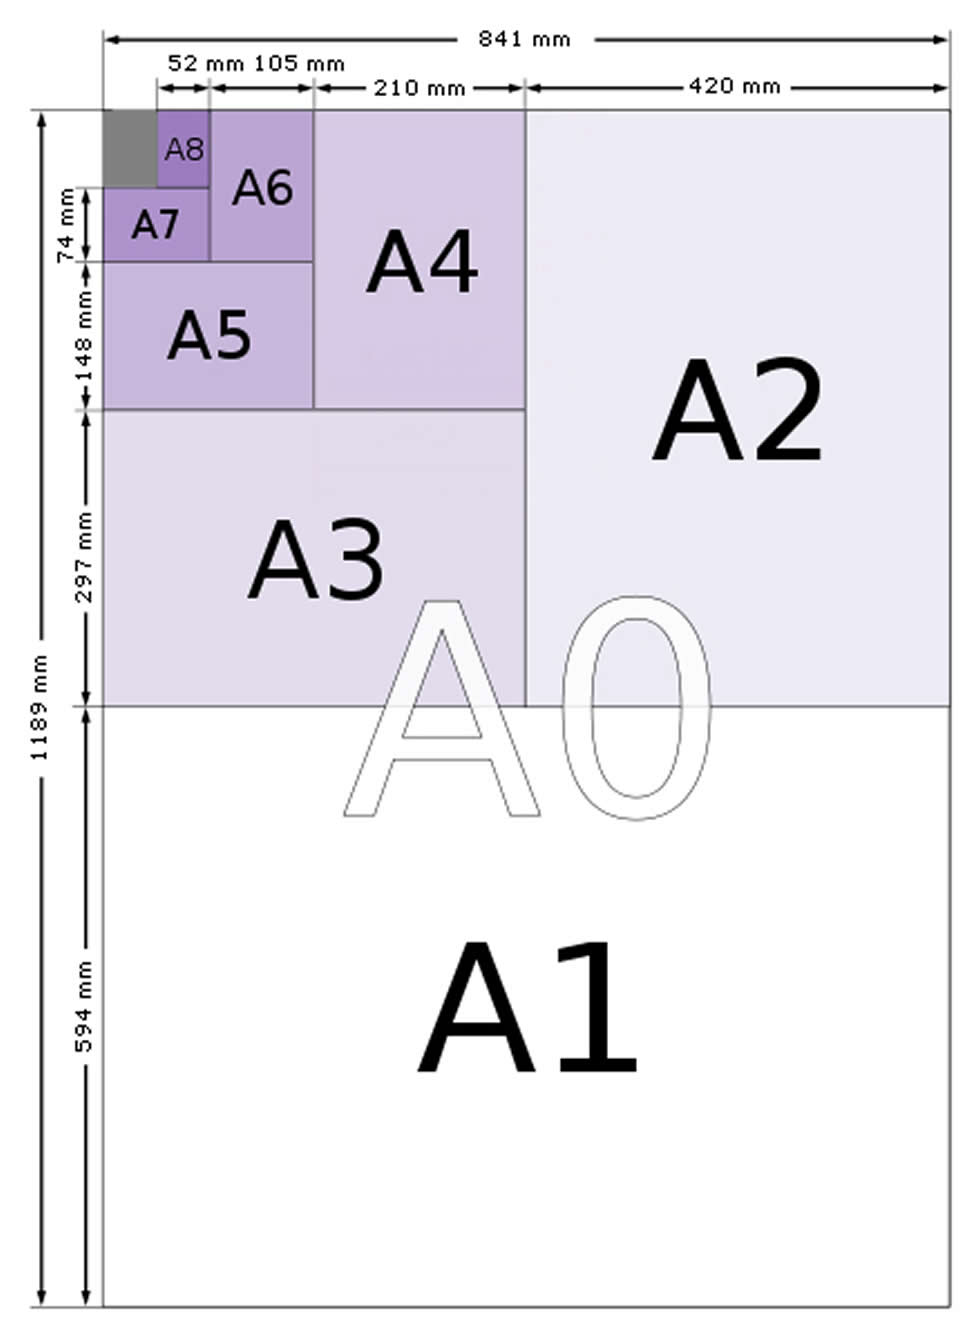 Diagramm der A-Papiergrößen und ihrer Beziehungen